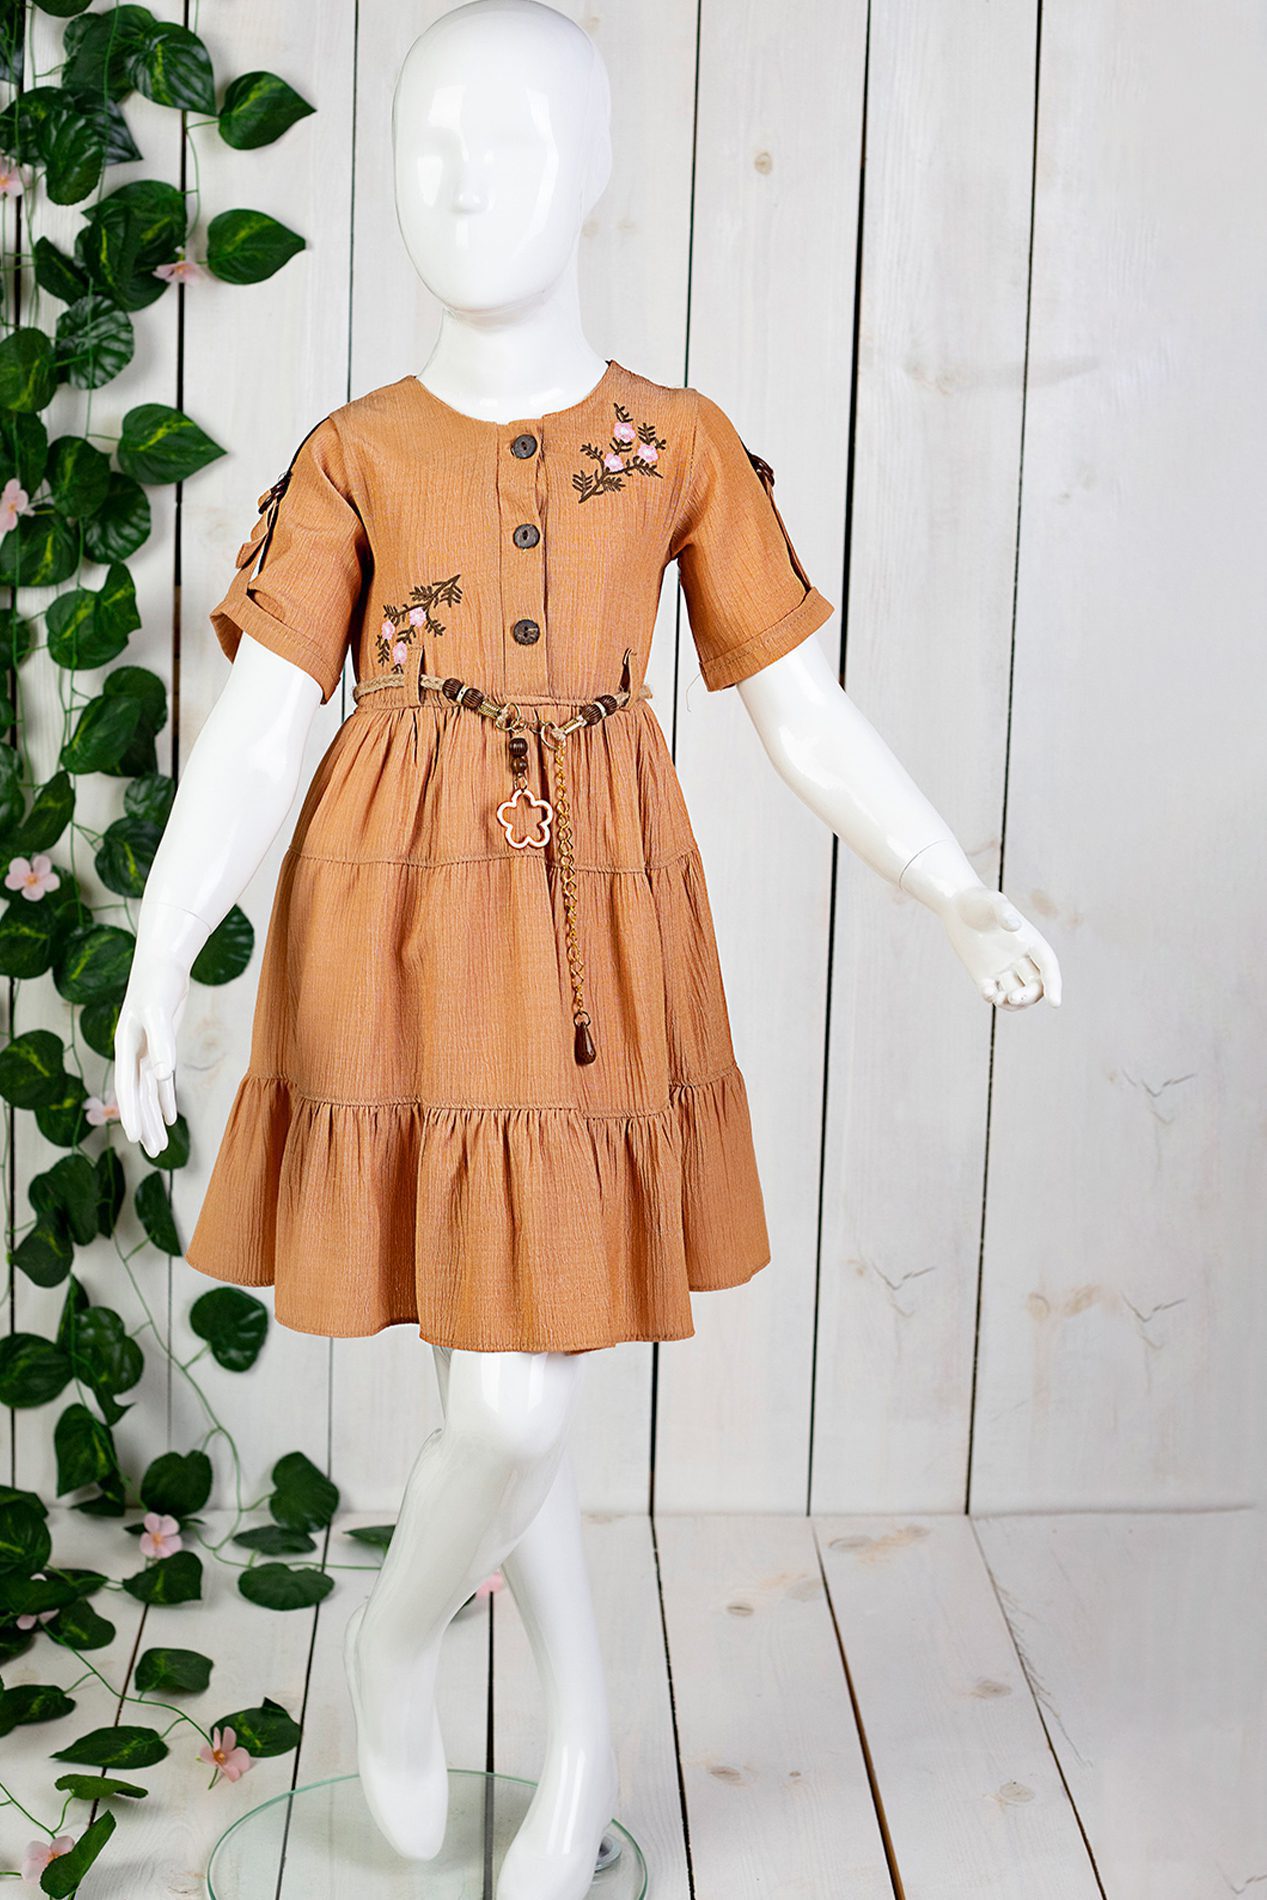 Girl Dress With Flower Details / 2Y | 3Y | 4Y | 5Y - Kids Fashion Turkey